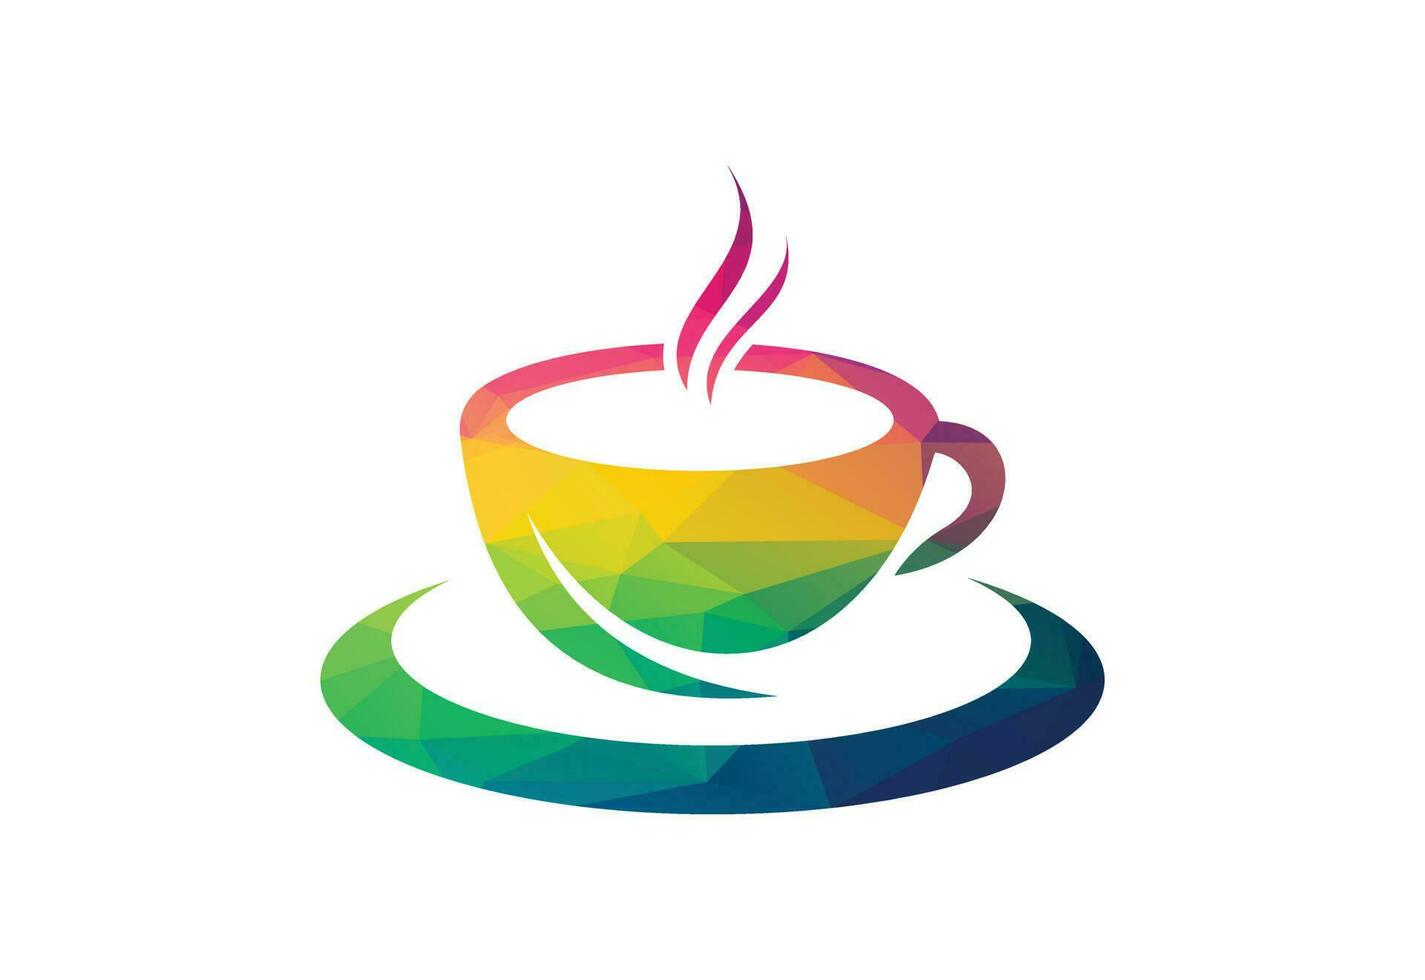 låg poly och kaffe affär, restaurang logotyp design vektor design begrepp